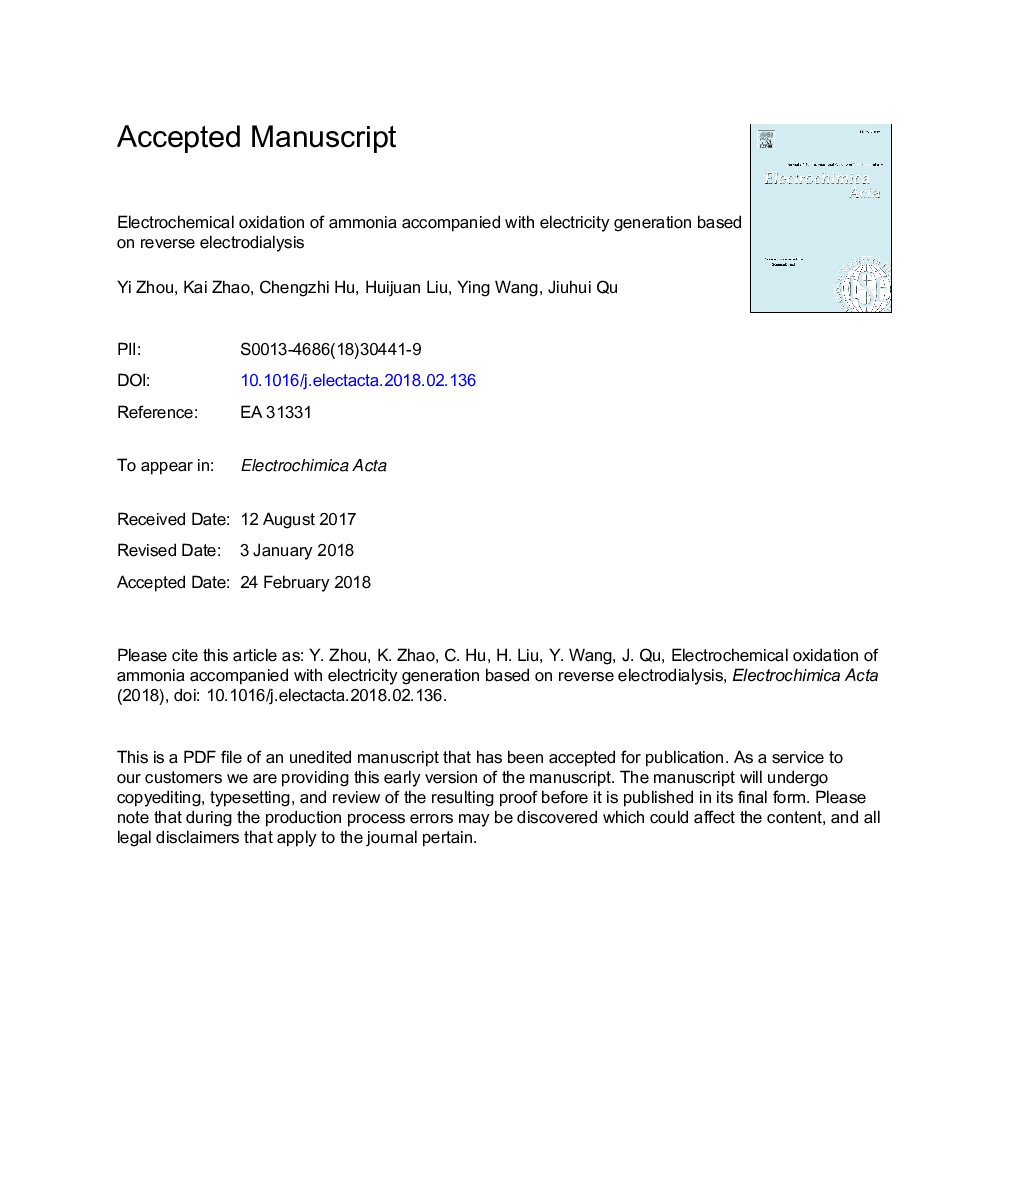 اکسیداسیون الکتروشیمیایی آمونیاک همراه با تولید الکتریسیته بر اساس الکترو دیودیالی معکوس 